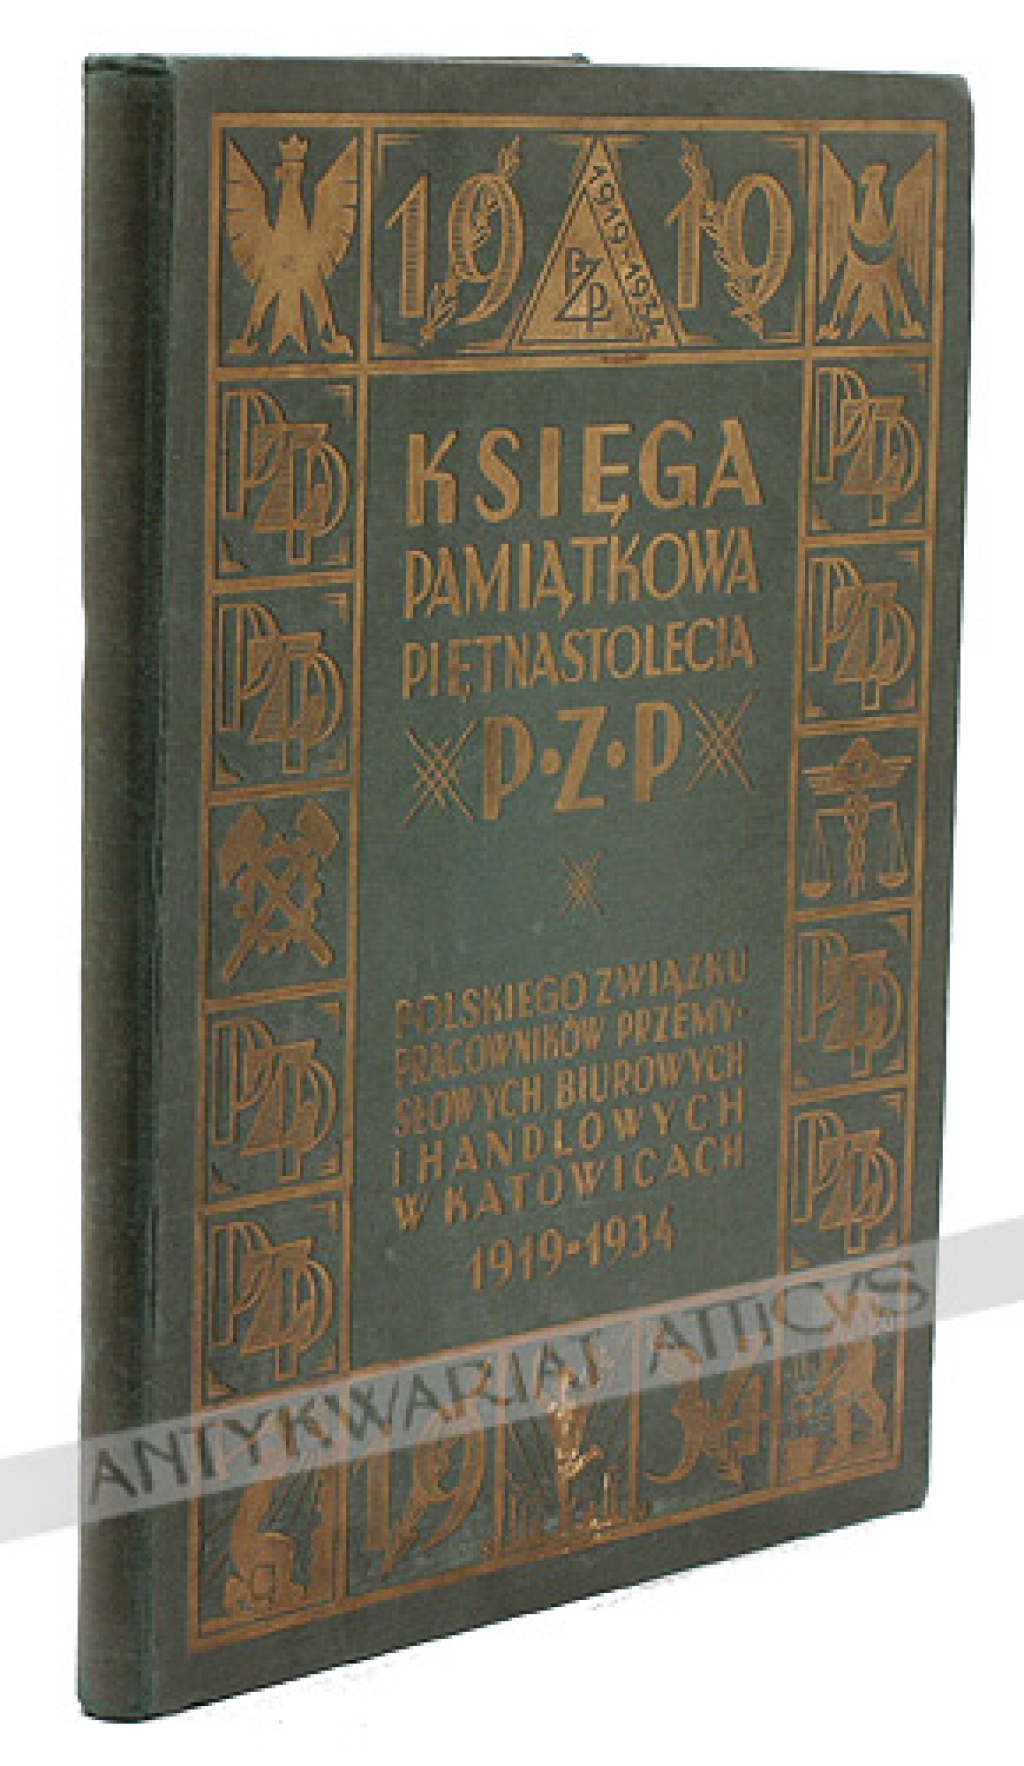 Księga Pamiątkowa Piętnastolecia P. Z. P., Polskiego Związku Pracowników Przemysłowych i Handlowych w Katowicach 1919-1934